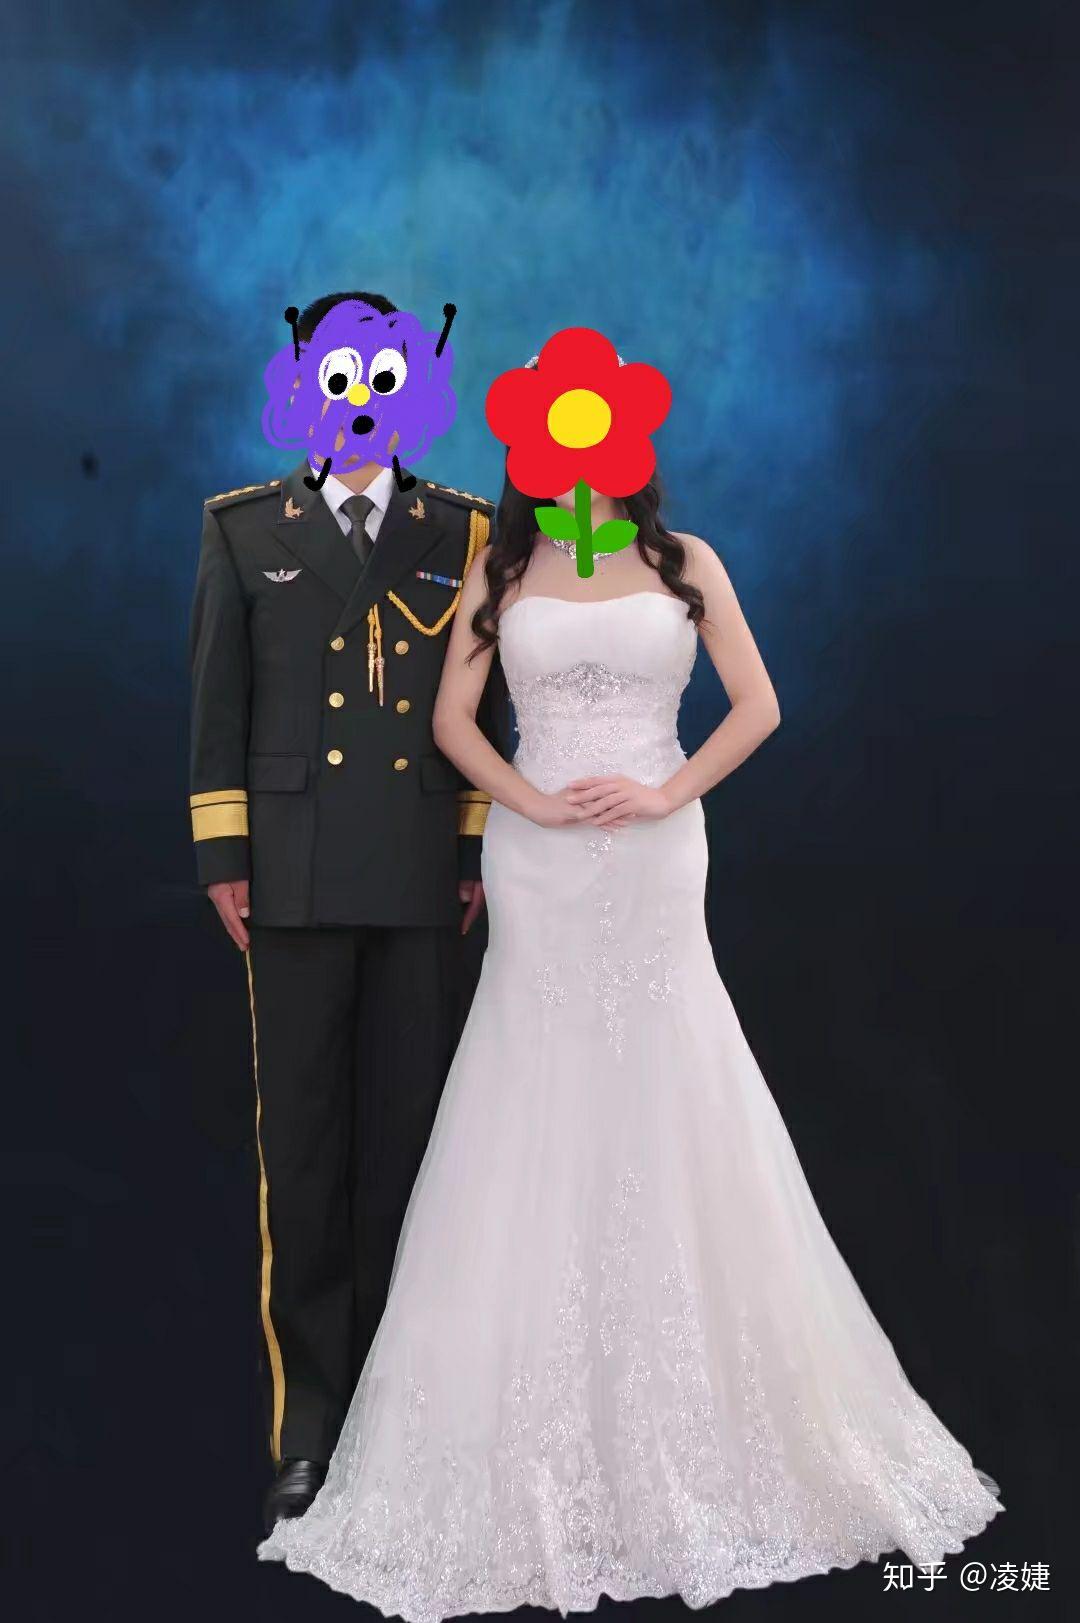 军人没退伍可以穿军装拍婚纱照吗? 